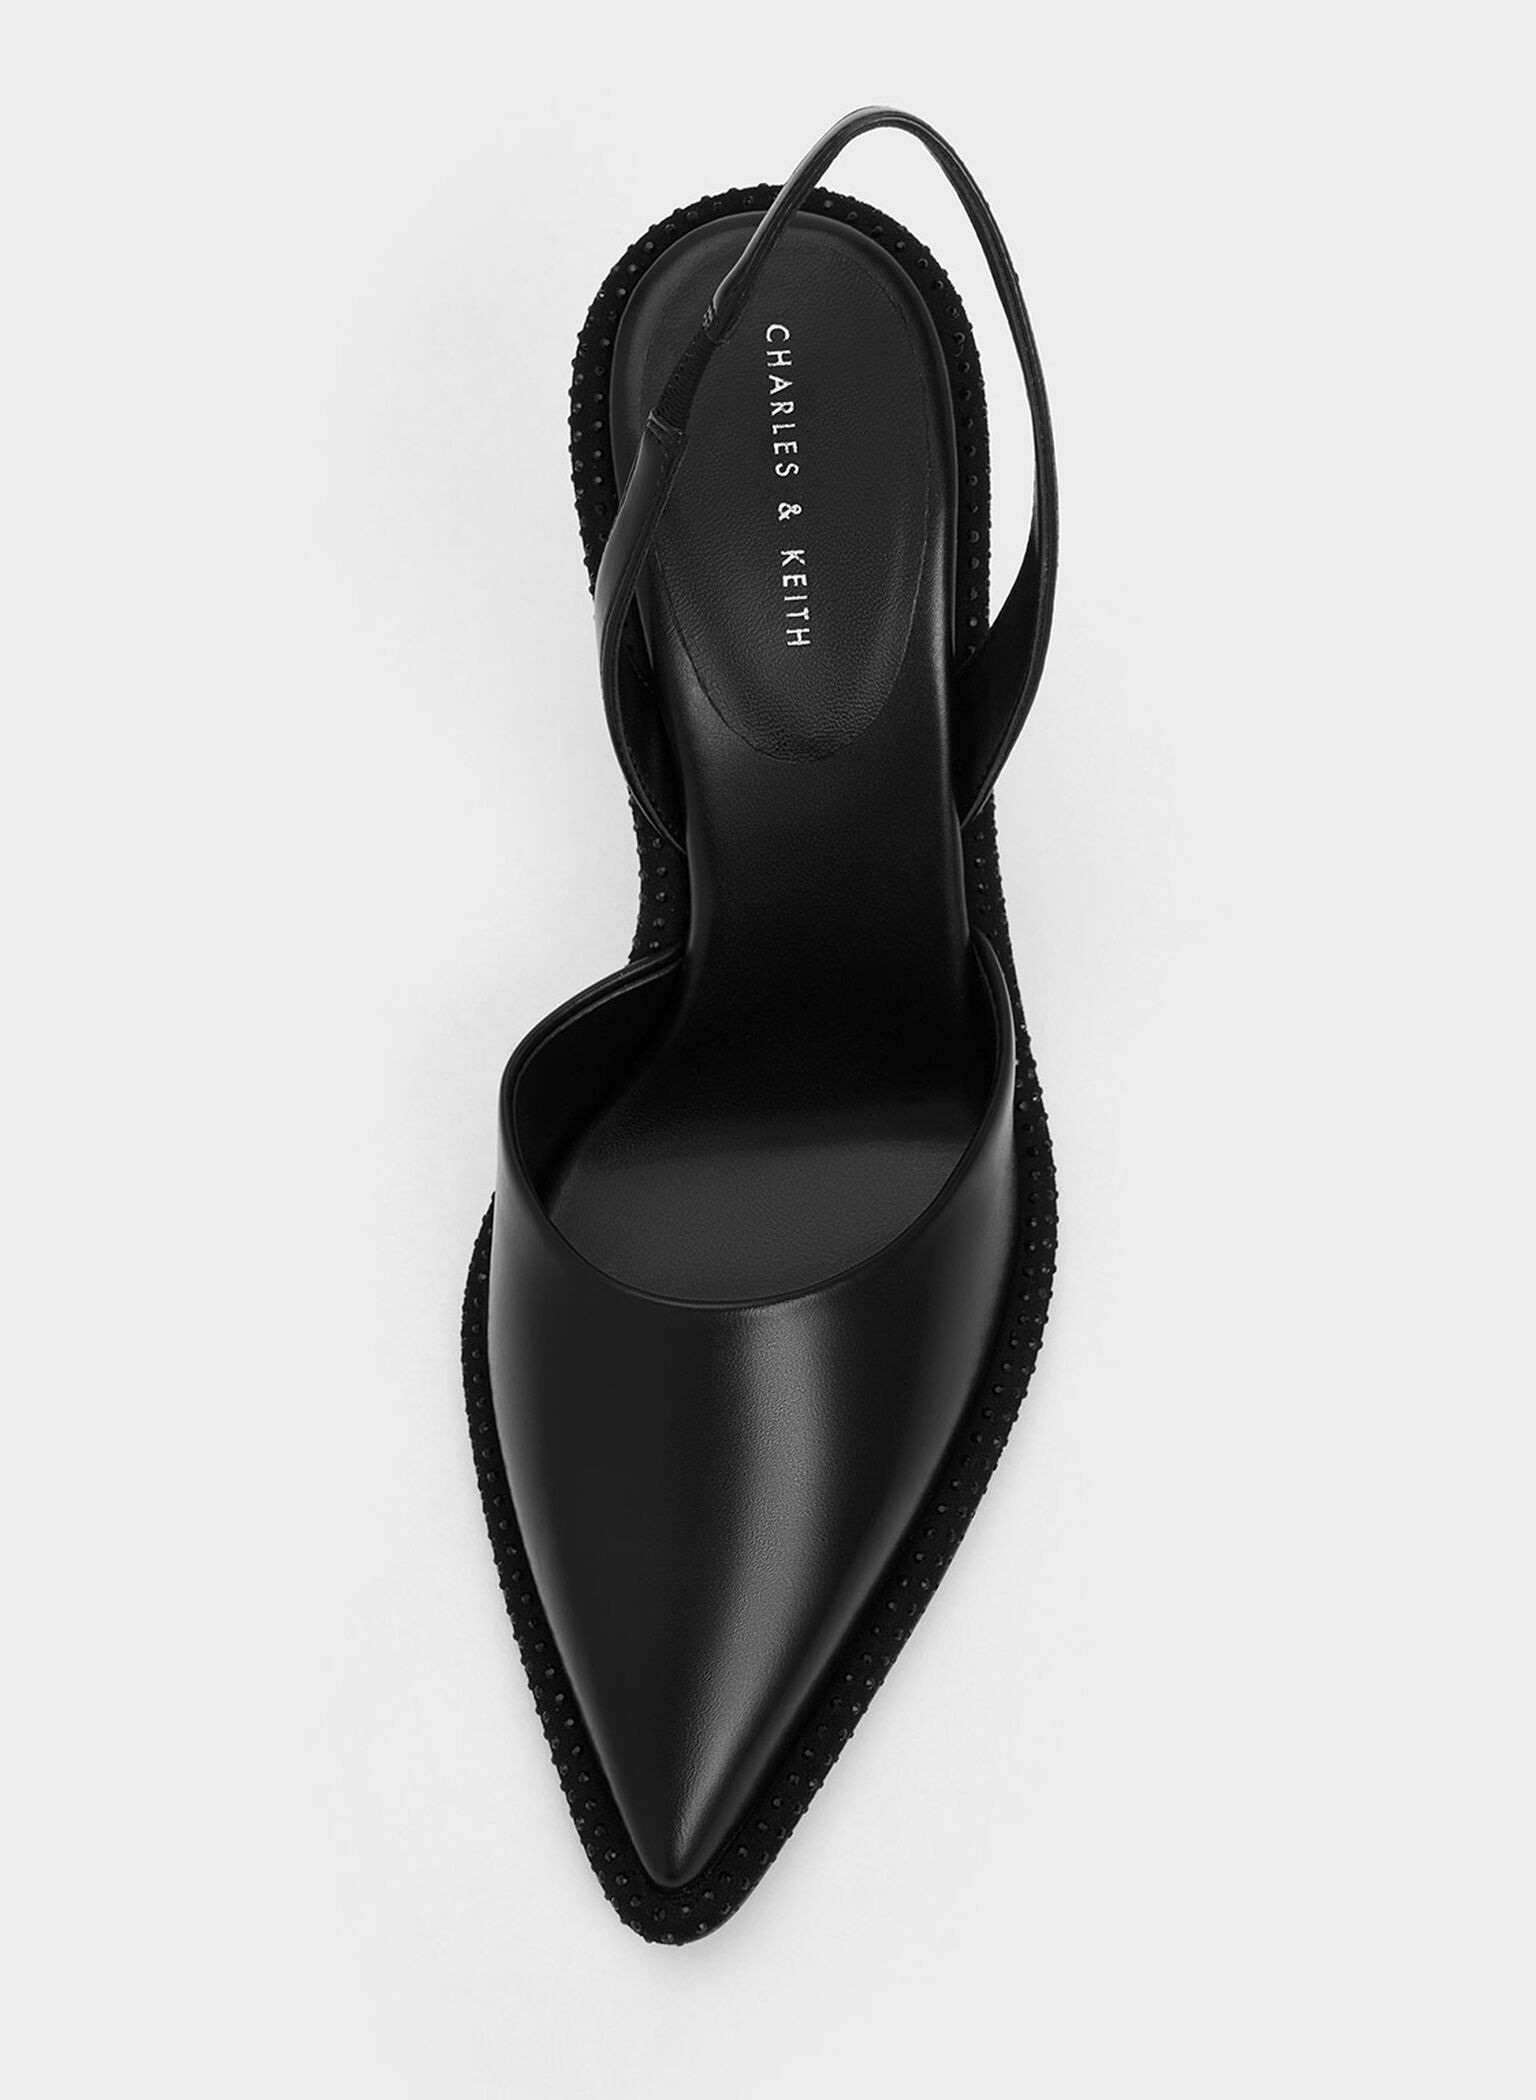 Crystal-Embellished Pointed-Toe Slingback Pumps, Black, hi-res